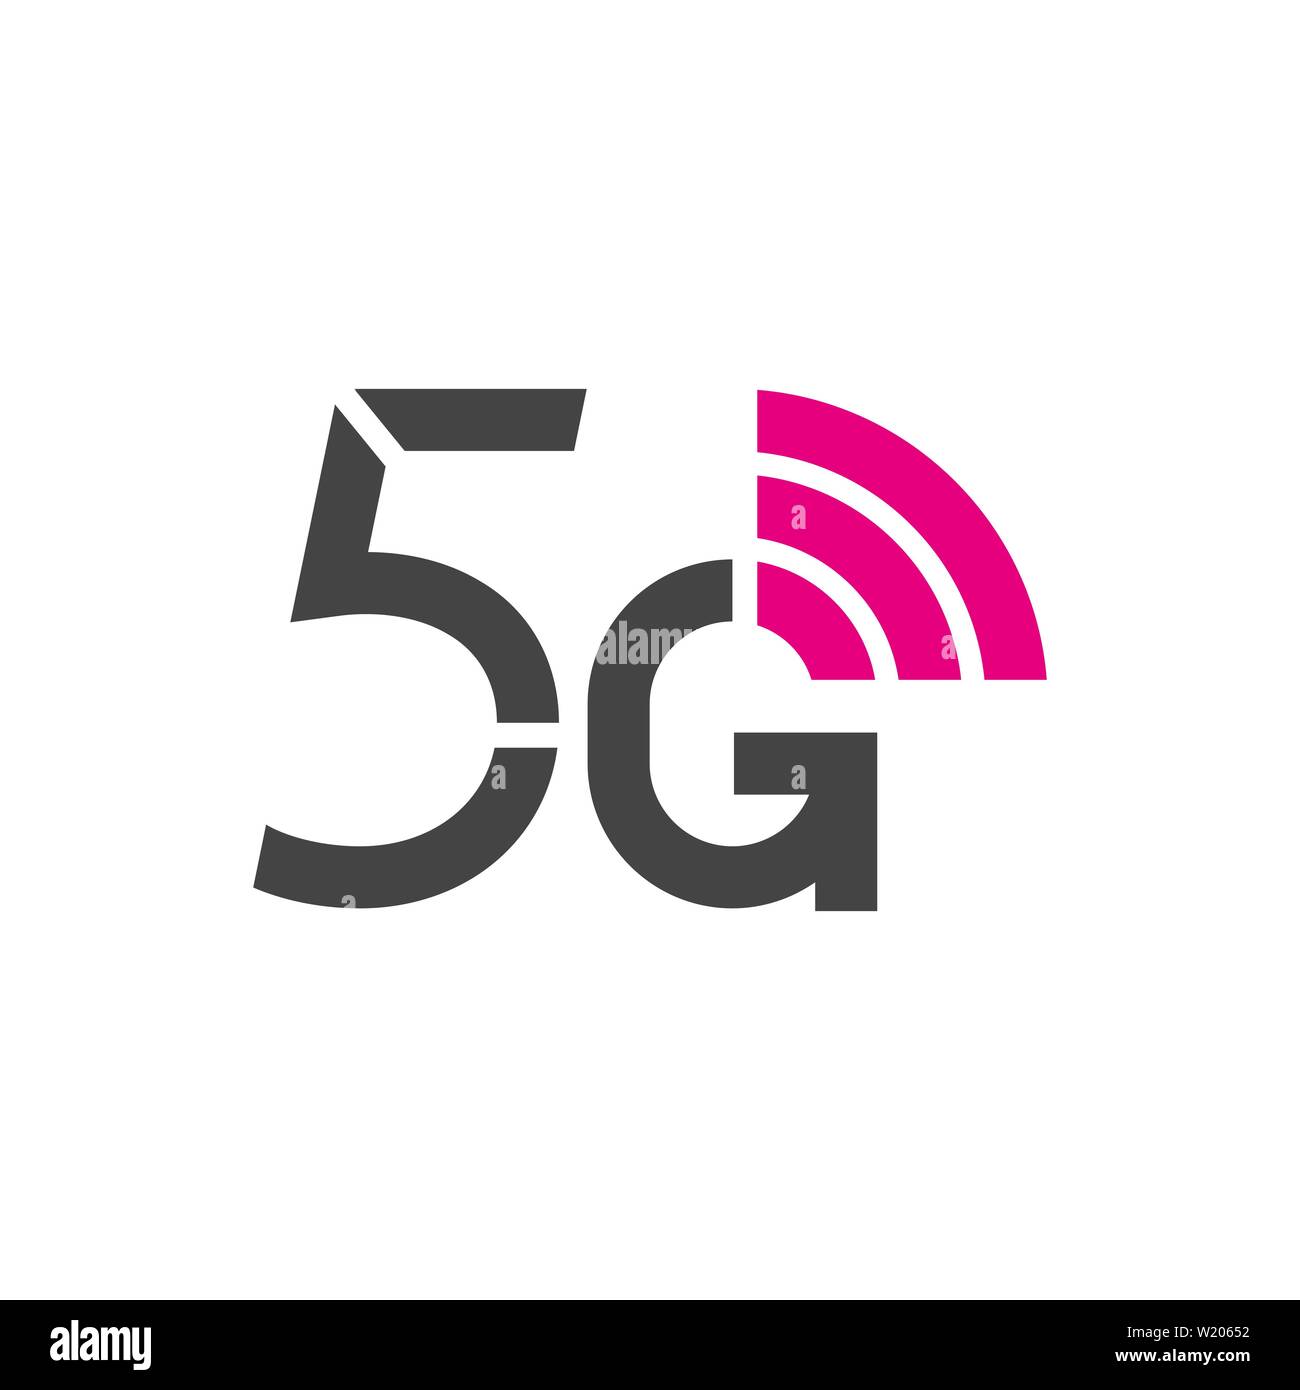 5G logo vettoriale. Quinta generazione internet wireless nella tecnologia di rete. I dispositivi mobili, telecomunicazioni, business, web networking. EPS 10. Illustrazione Vettoriale